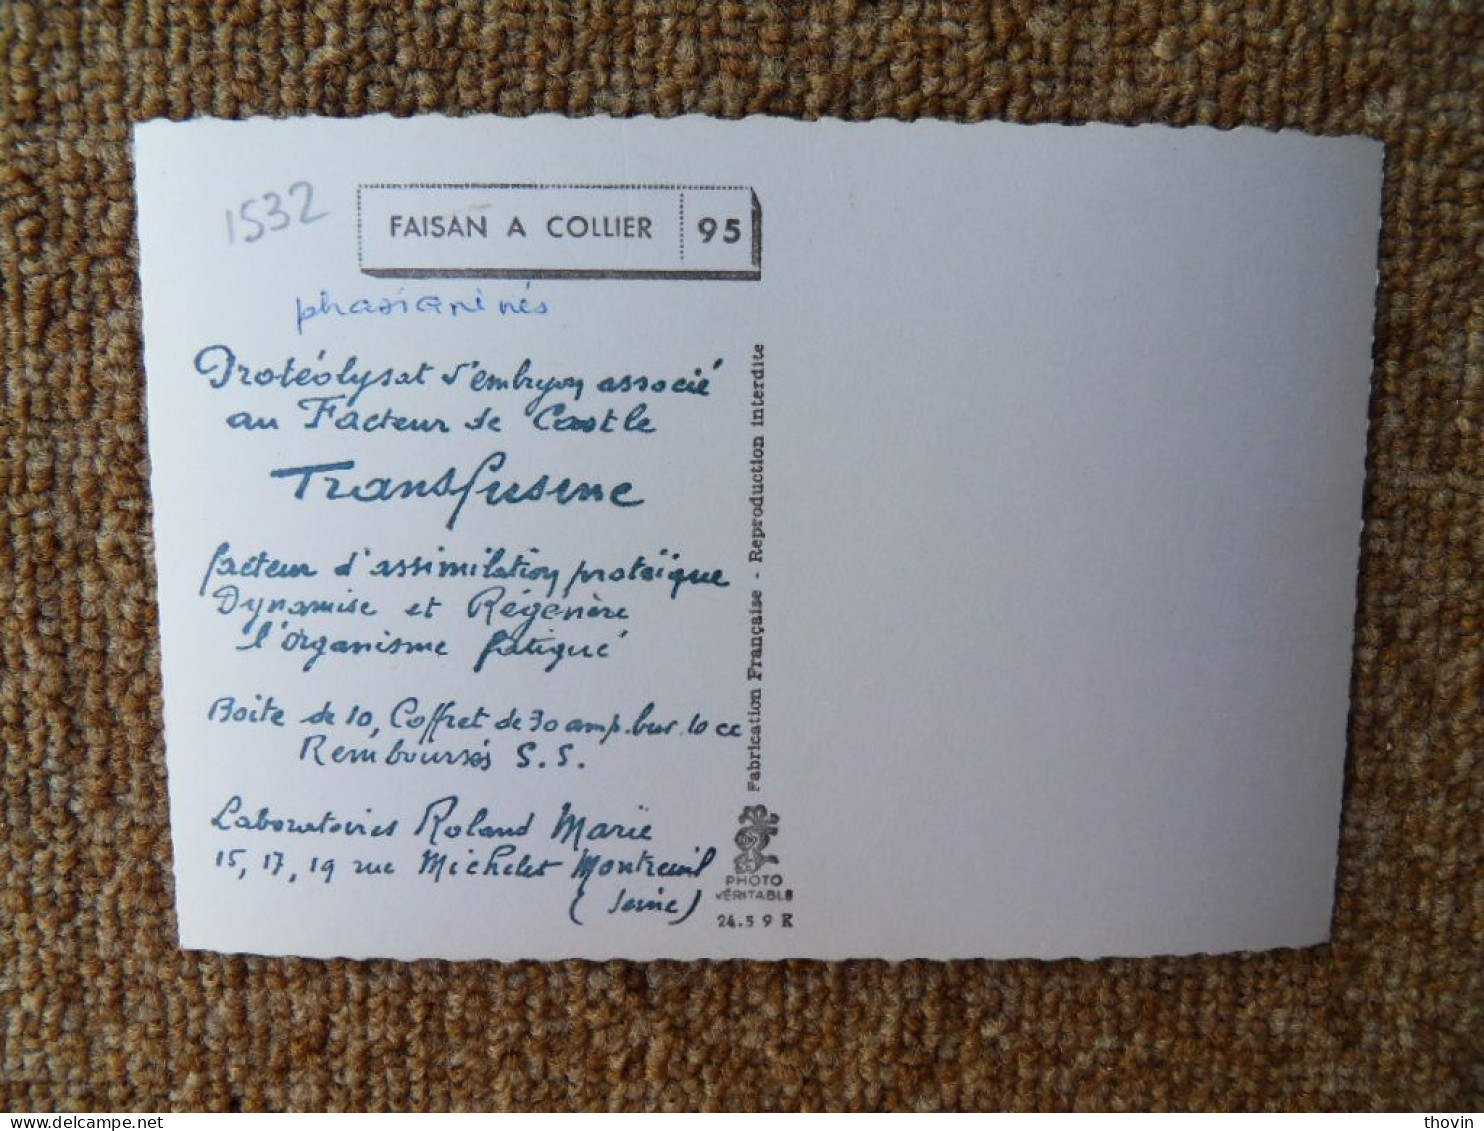 KB10/1523*1540-lot de 18 cartes postales animaux Publicité Laboratoires Roland Marie